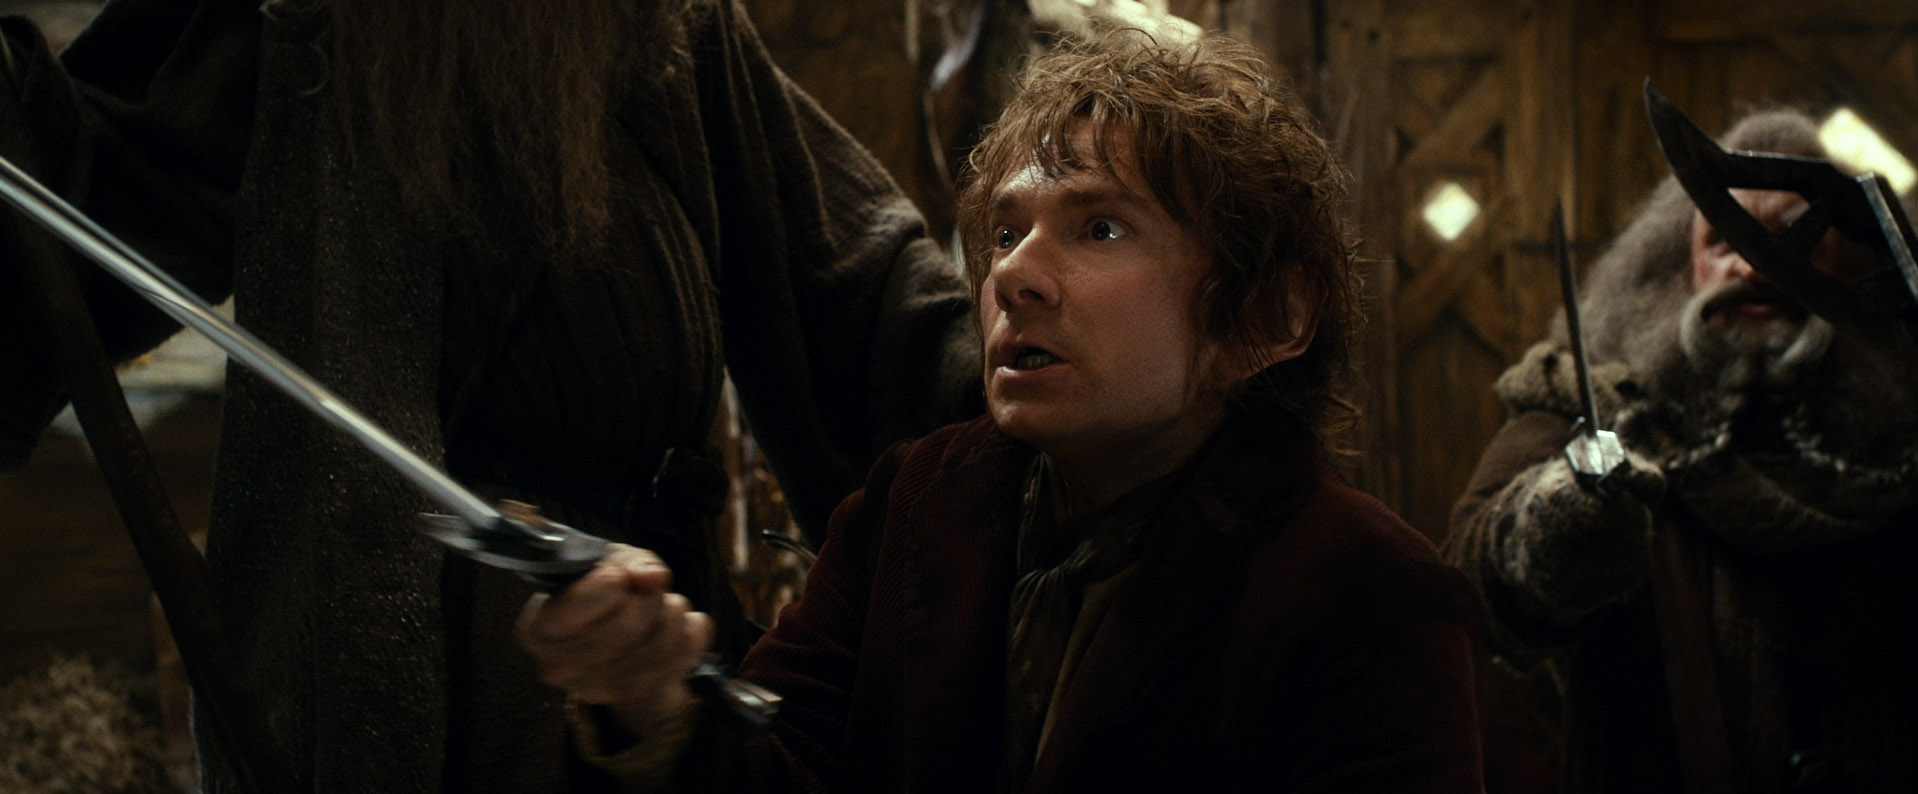 Los Personajes de El Hobbit: La Desolación de Smaug